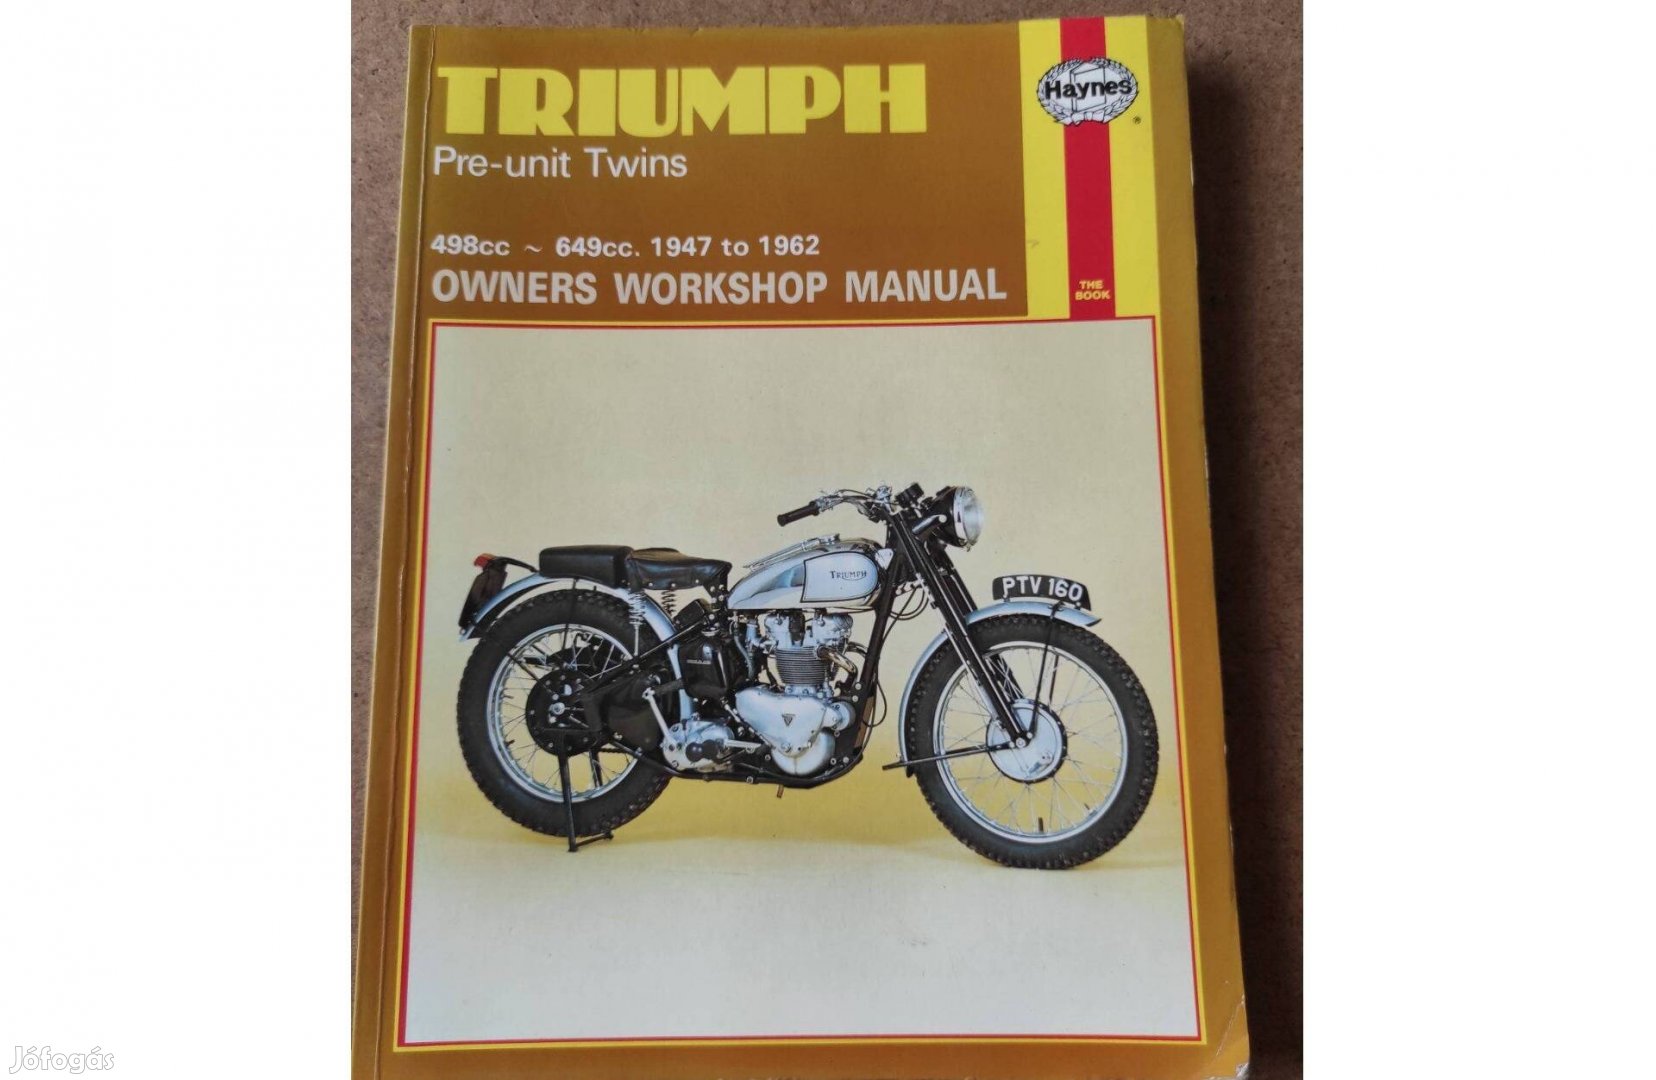 Triumph motorkerékpár 1947-1962 javítási kézikönyv